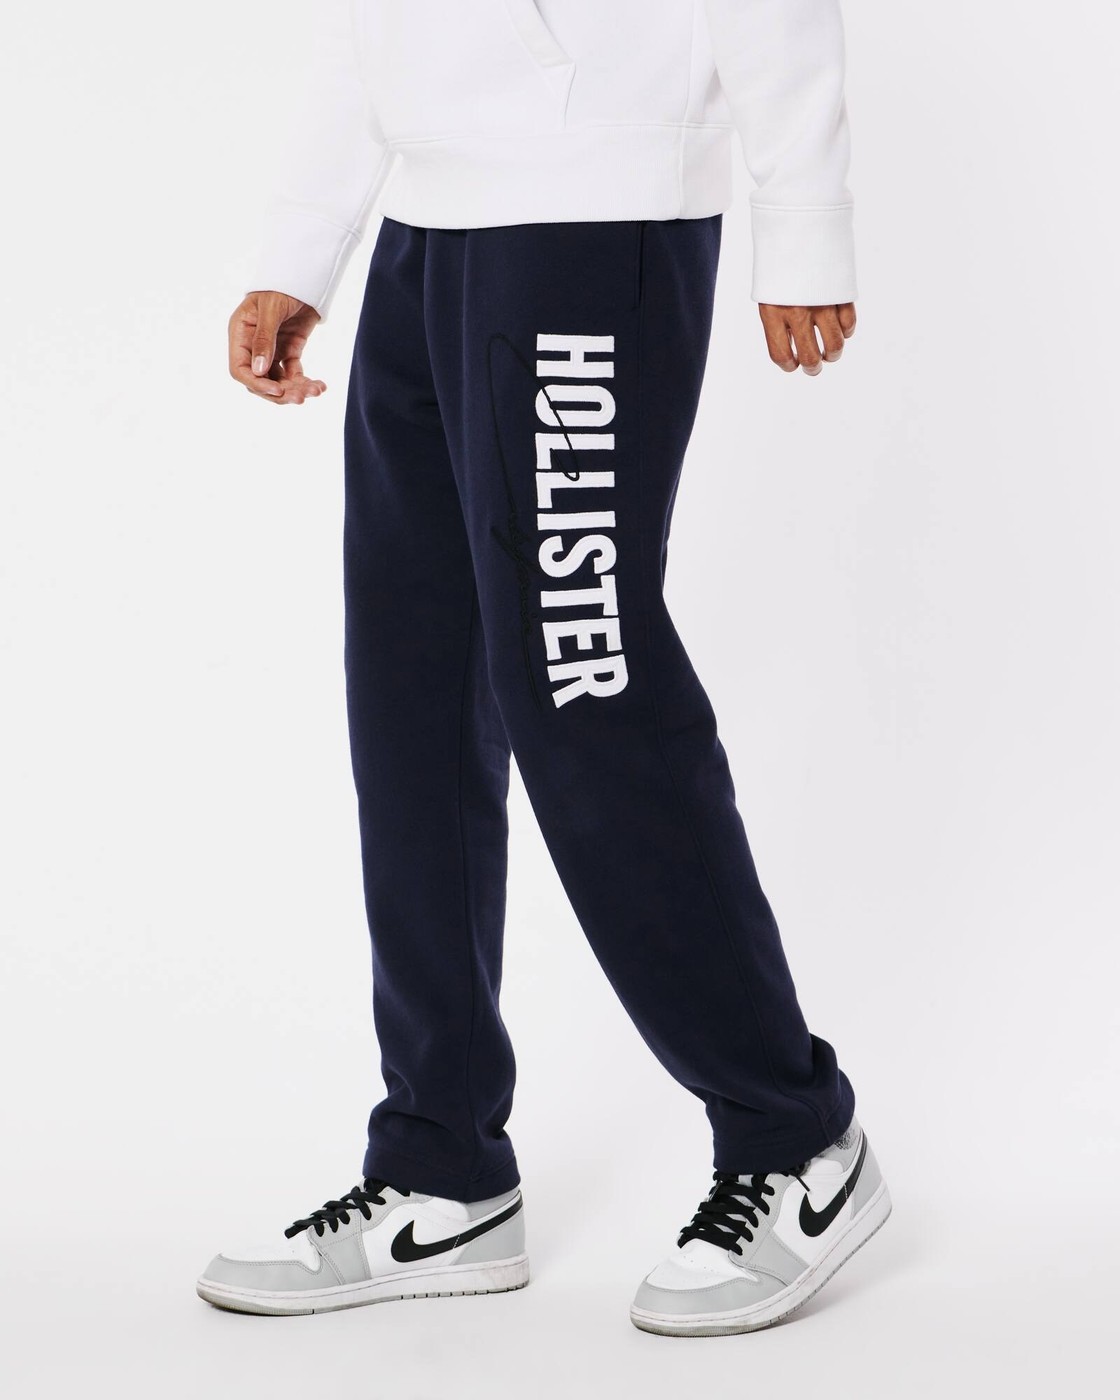 Мужские спортивные штаны Hollister, XL, XL